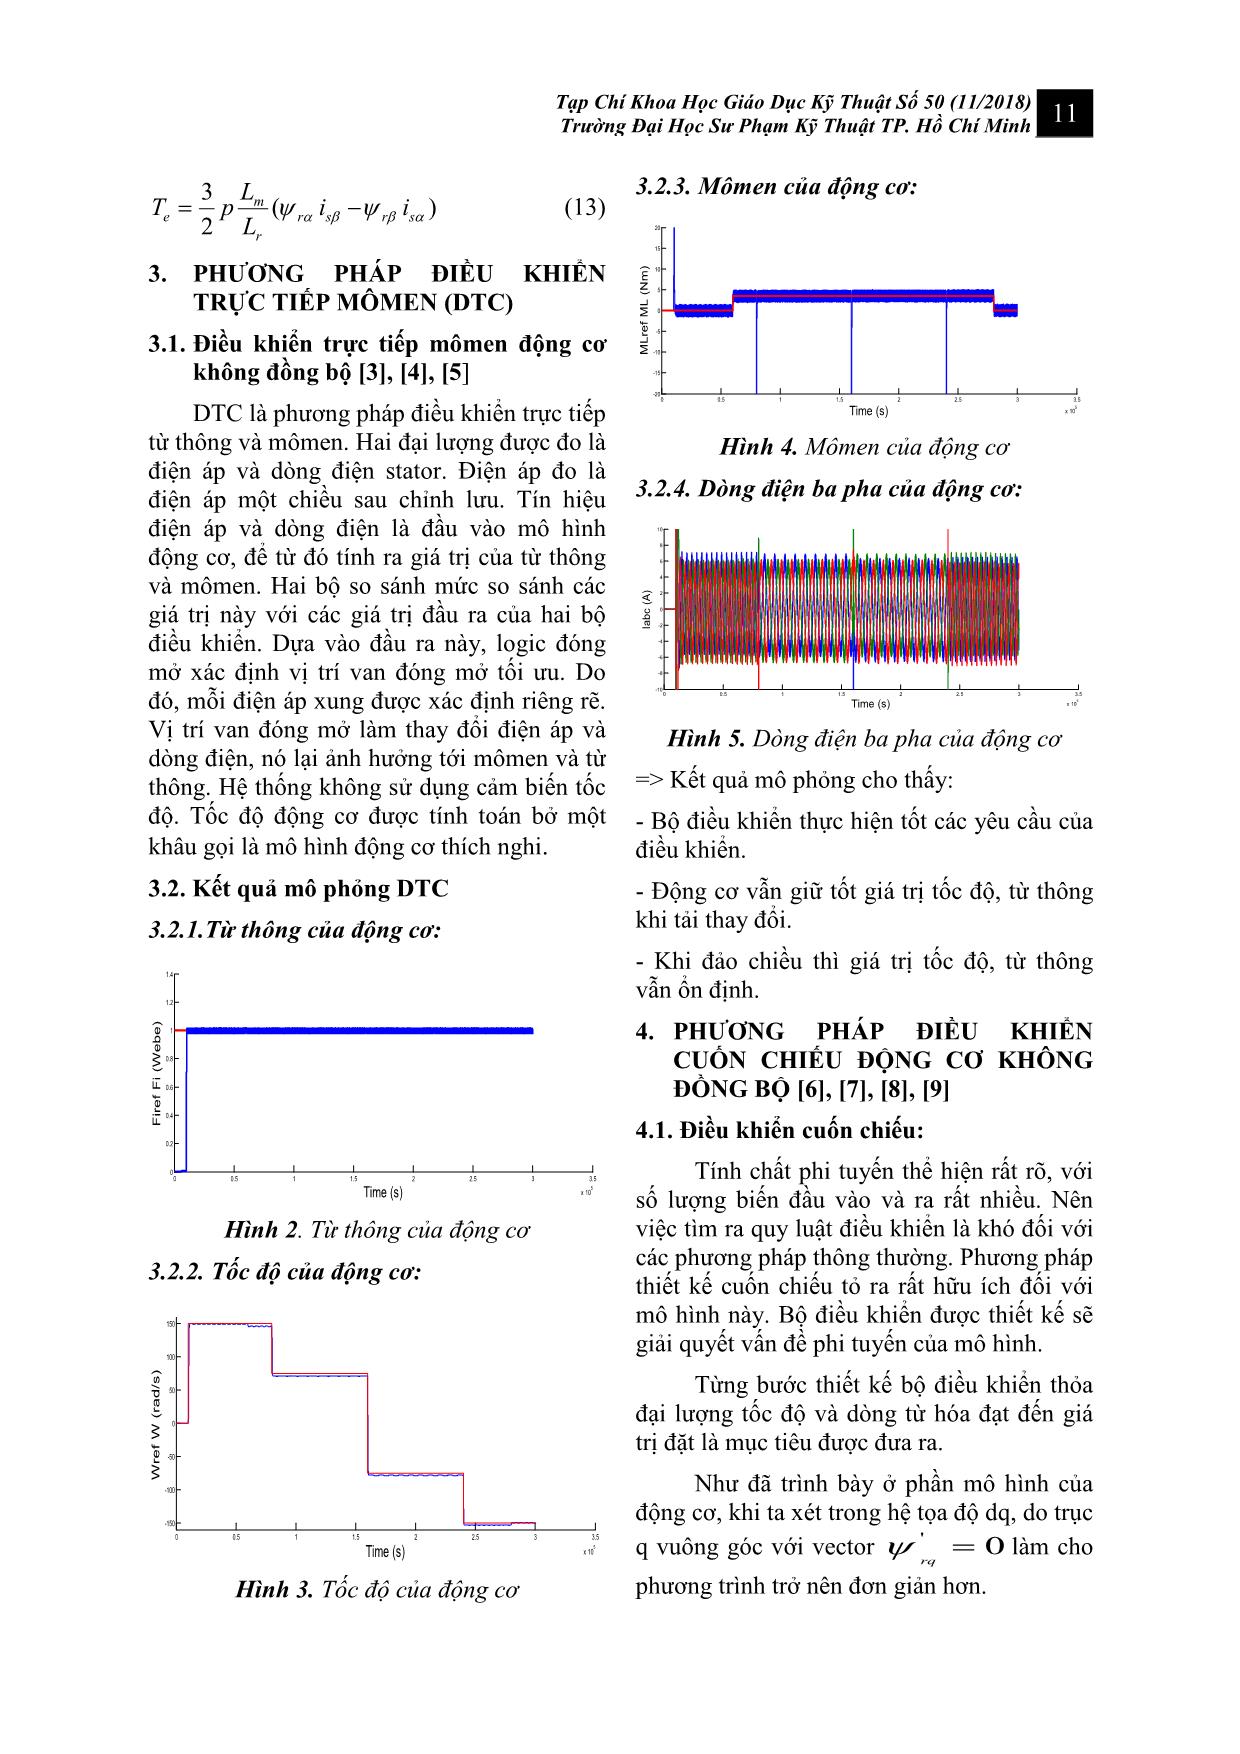 Điều khiển động cơ không đồng bộ ba pha dùng phương pháp cuốn chiếu trang 4